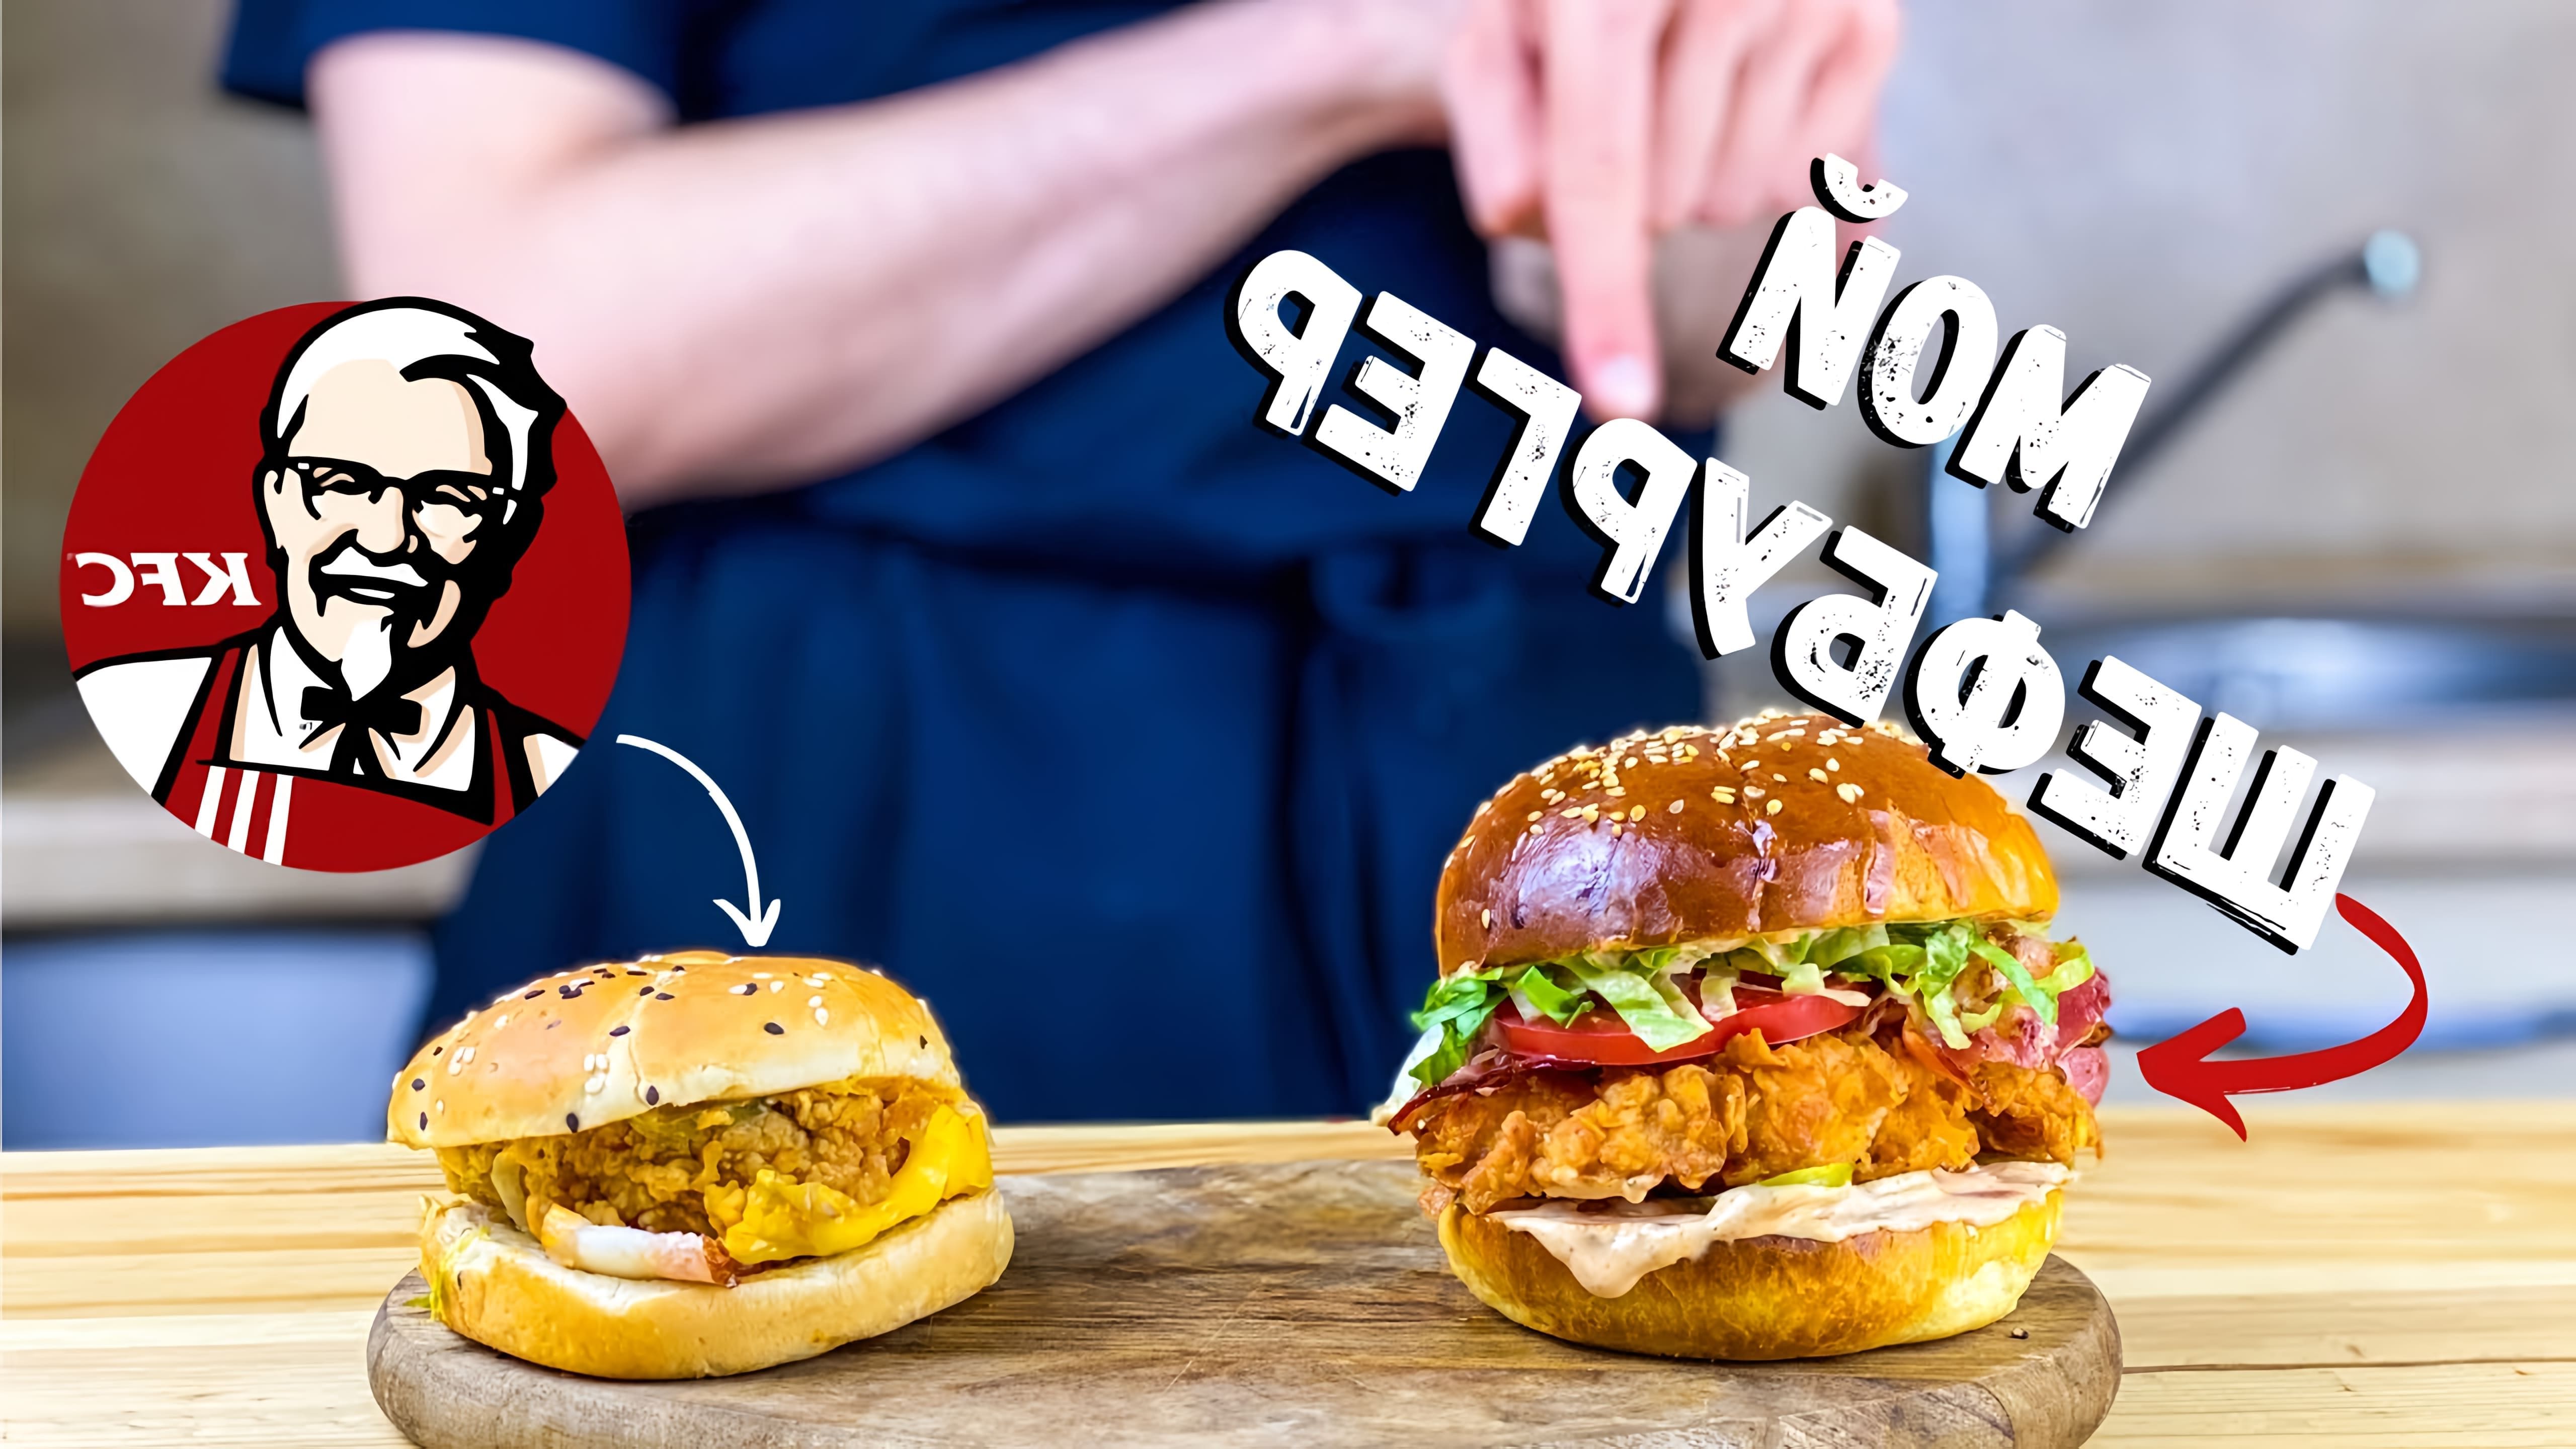 Видео как приготовить домашнюю версию бургера KFC Chef Burger Deluxe с нуля, используя базовые ингредиенты